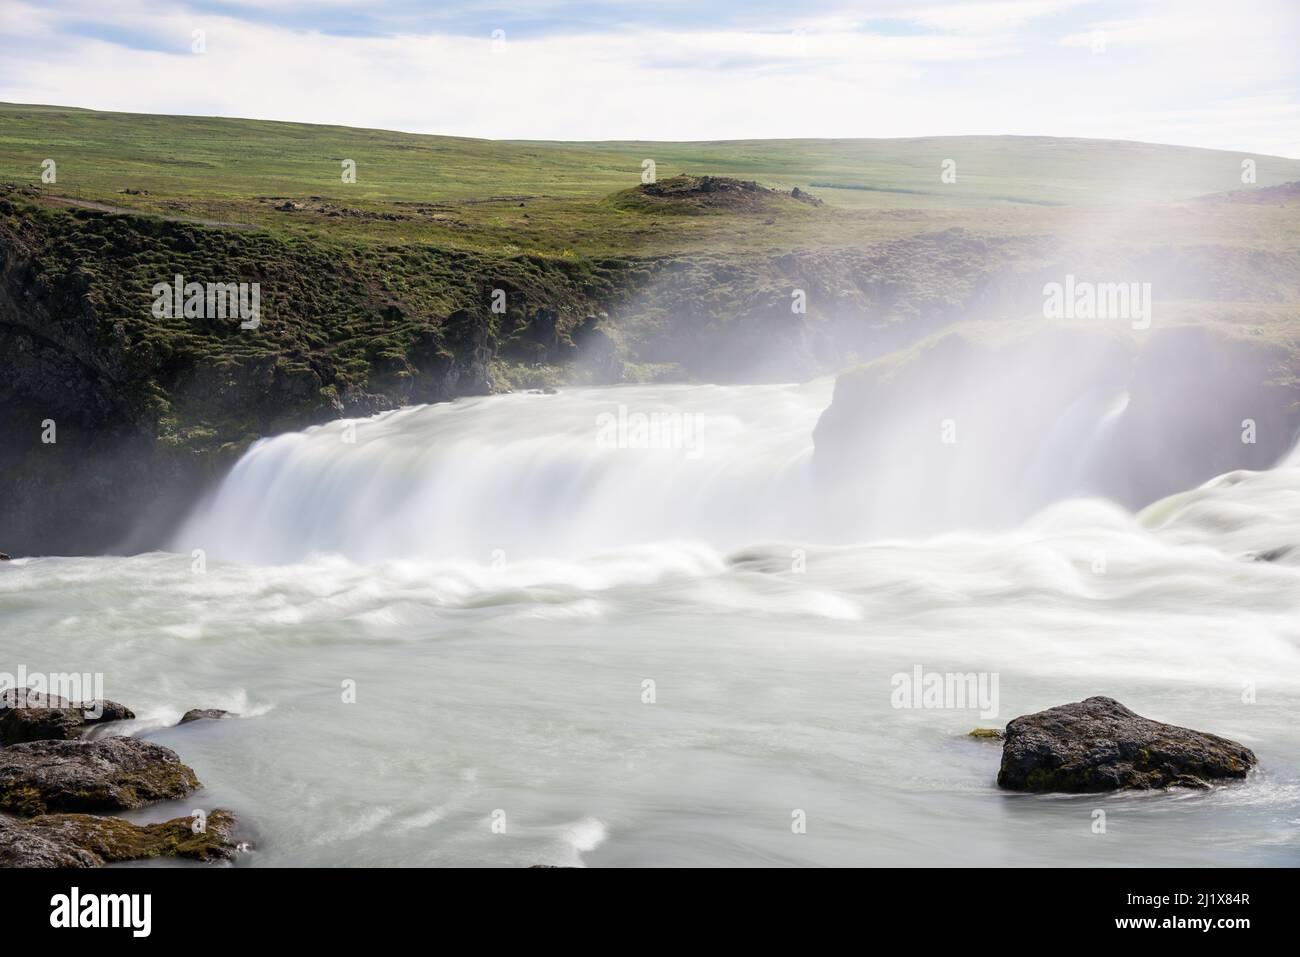 Fließendes Wasser am Rande des majestätischen Wasserfalls. Kraft in der Natur Konzept. Stockfoto